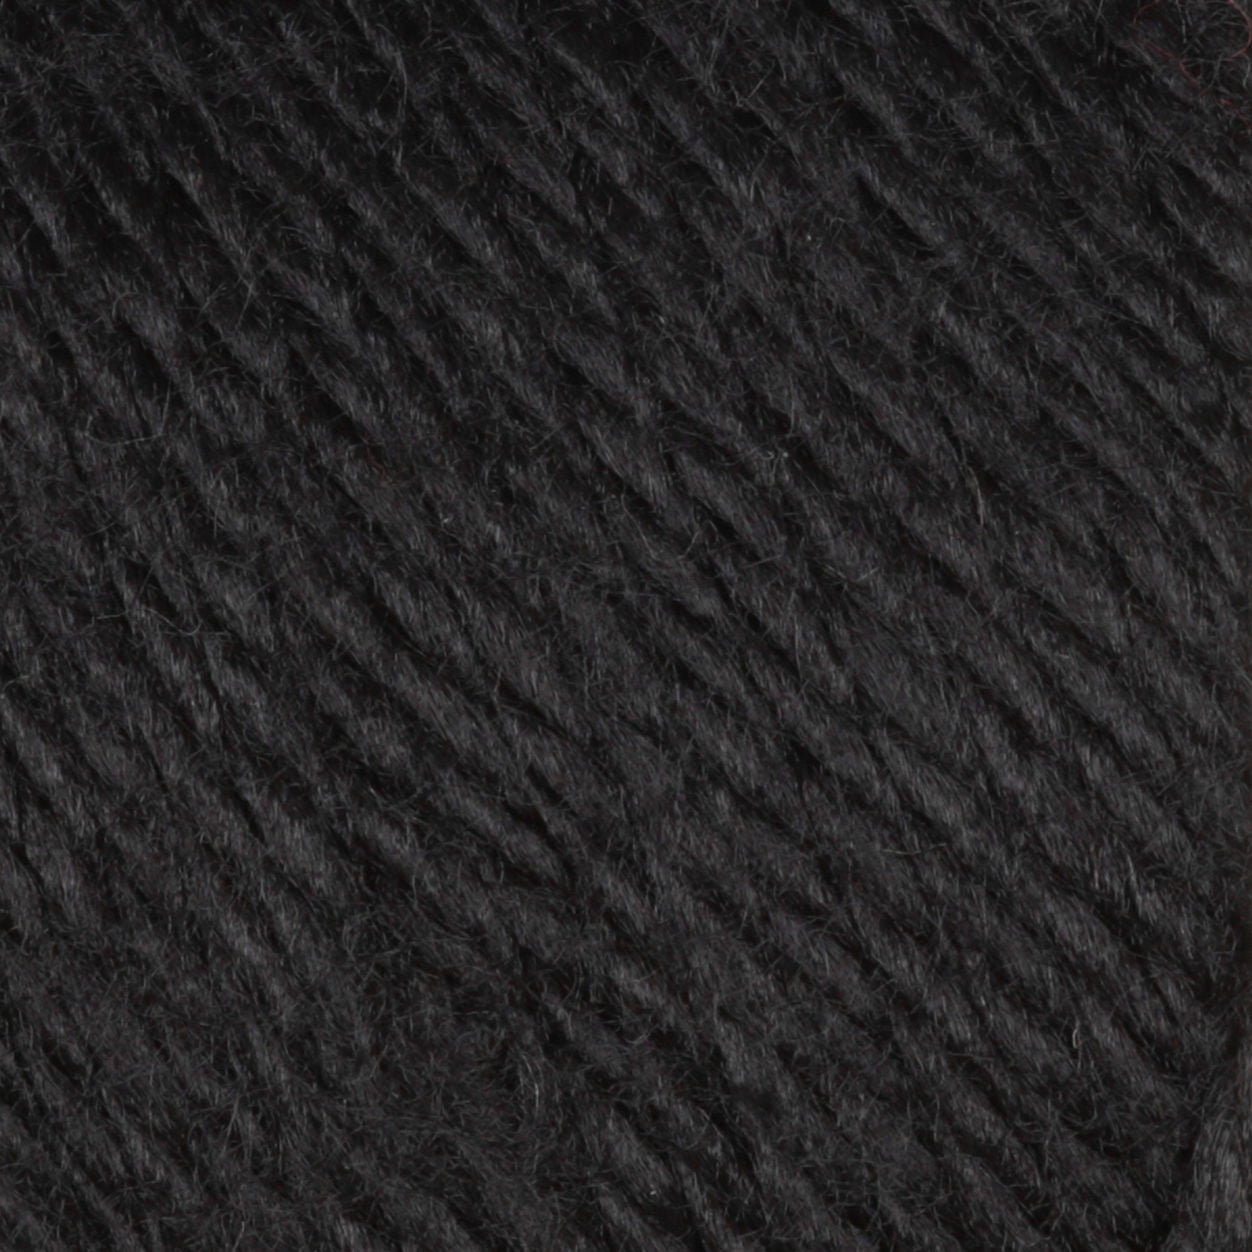 Caron Black Simply Soft Yarn